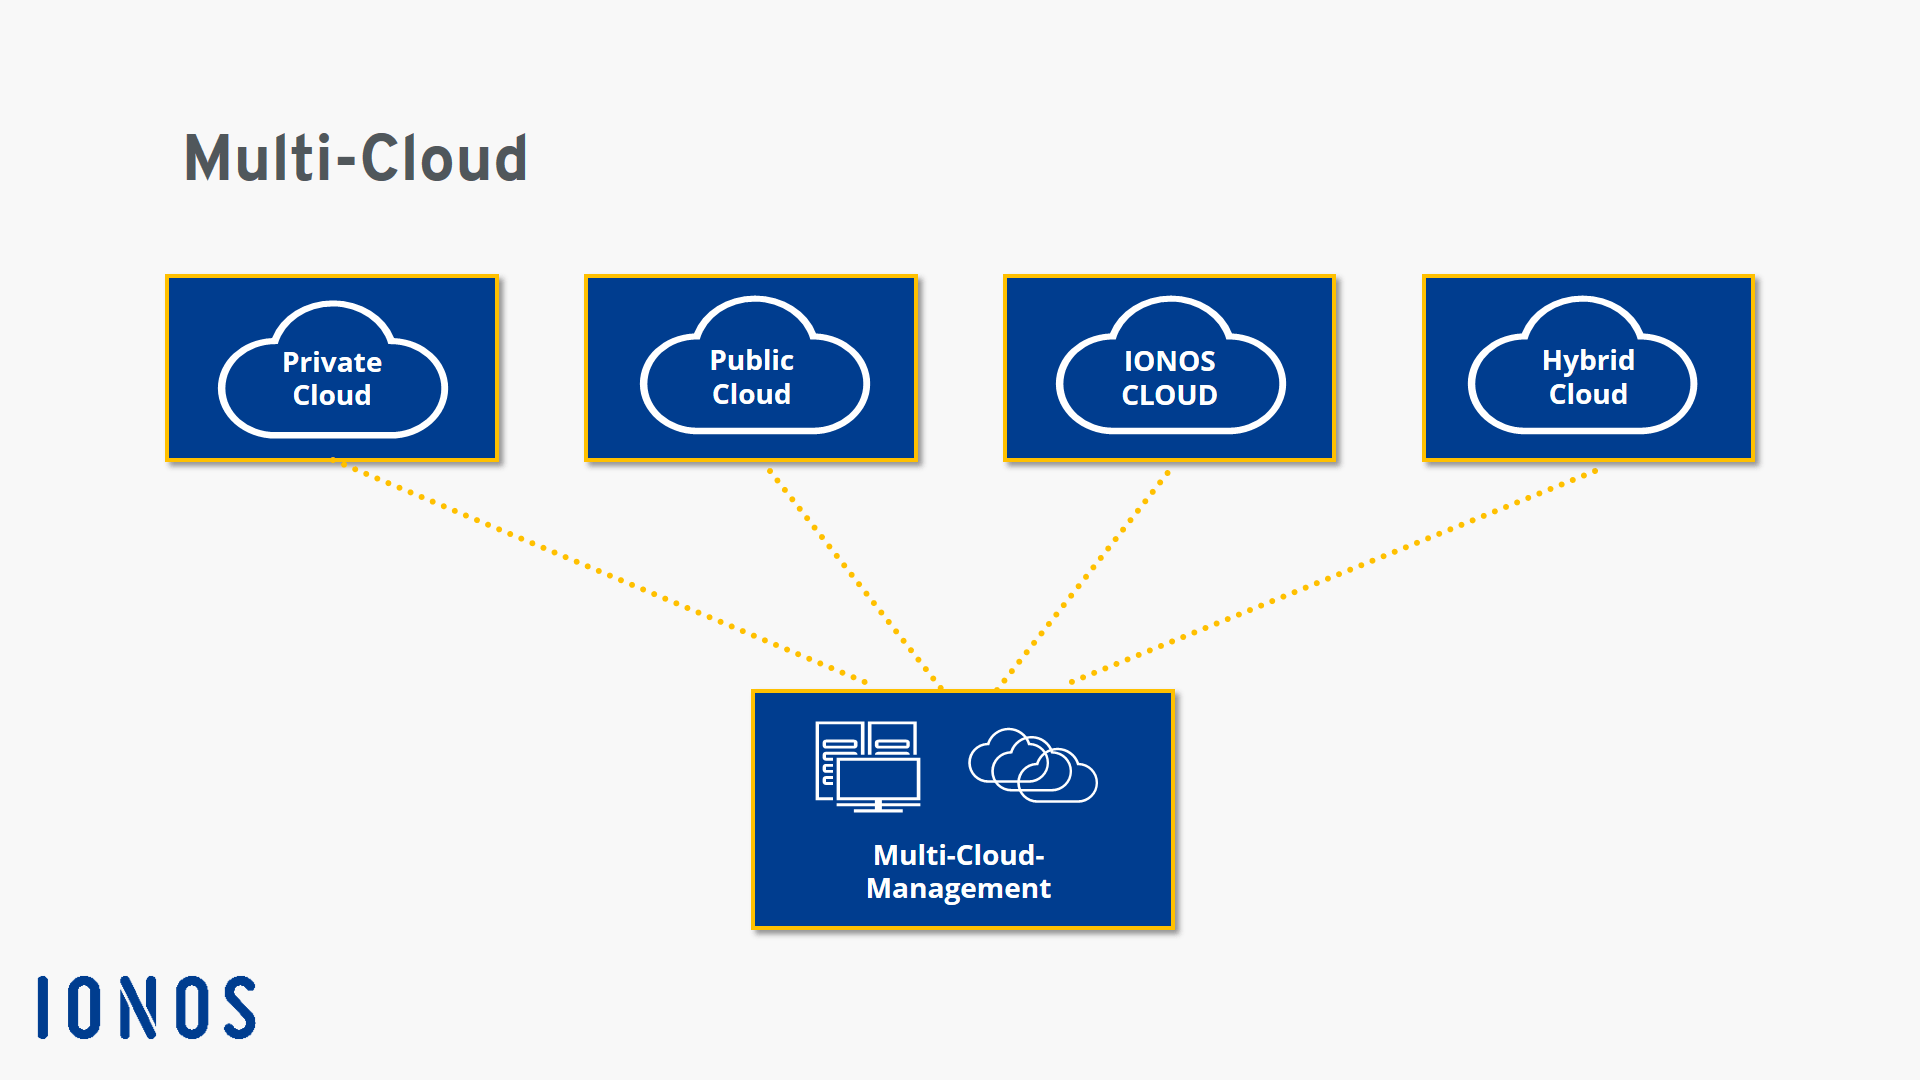 Schema einer Multi-Cloud-Infrastruktur